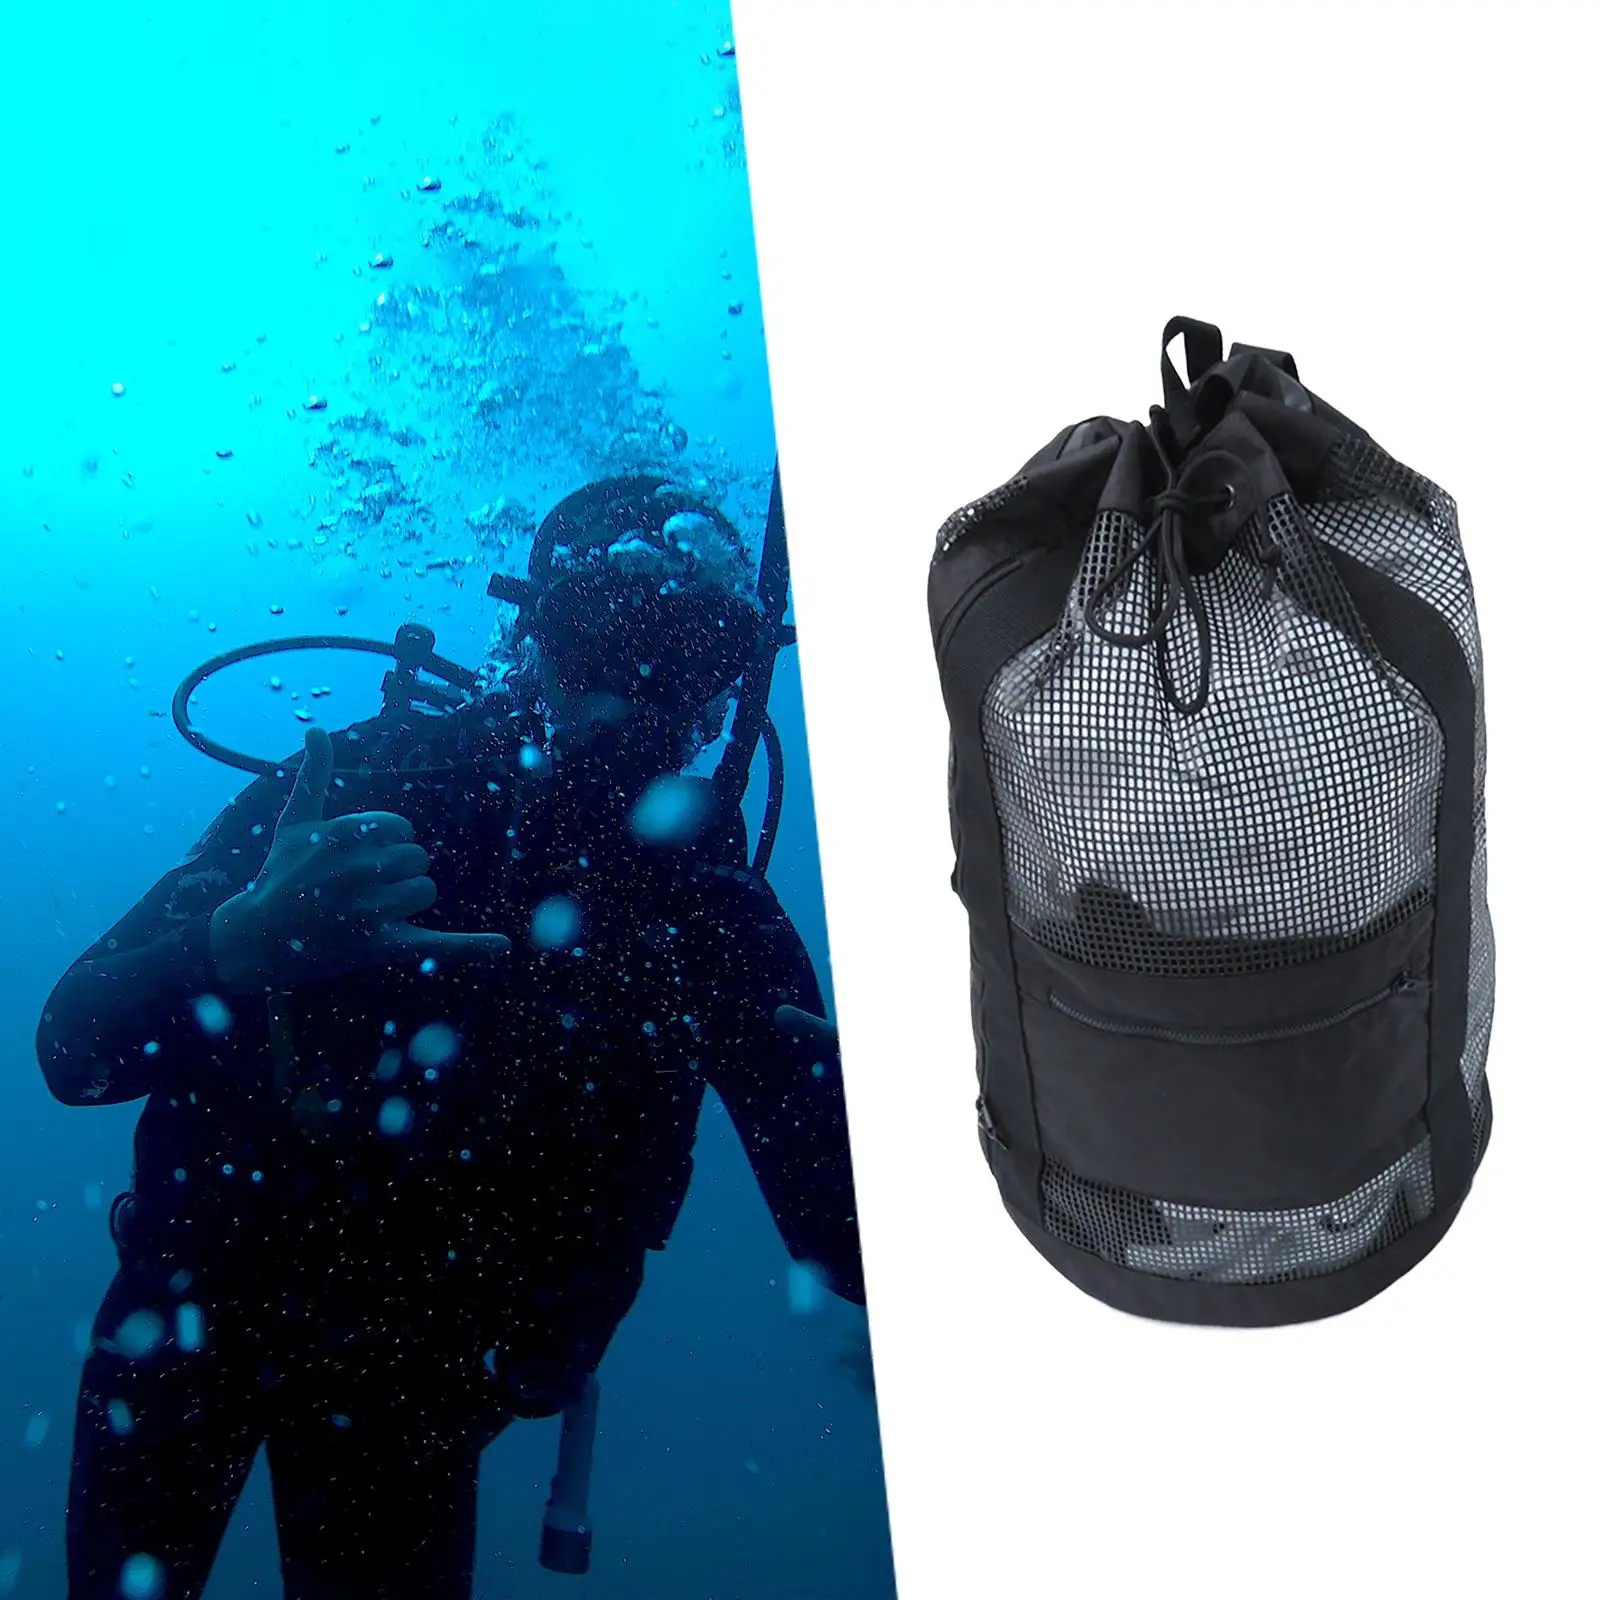 Scuba Diving Bag Holds Mask, Fins, Snorkel Mesh Travel Backpack Diving Gear Bag for Equipment Snorkeling Gear Scuba Diving Beach